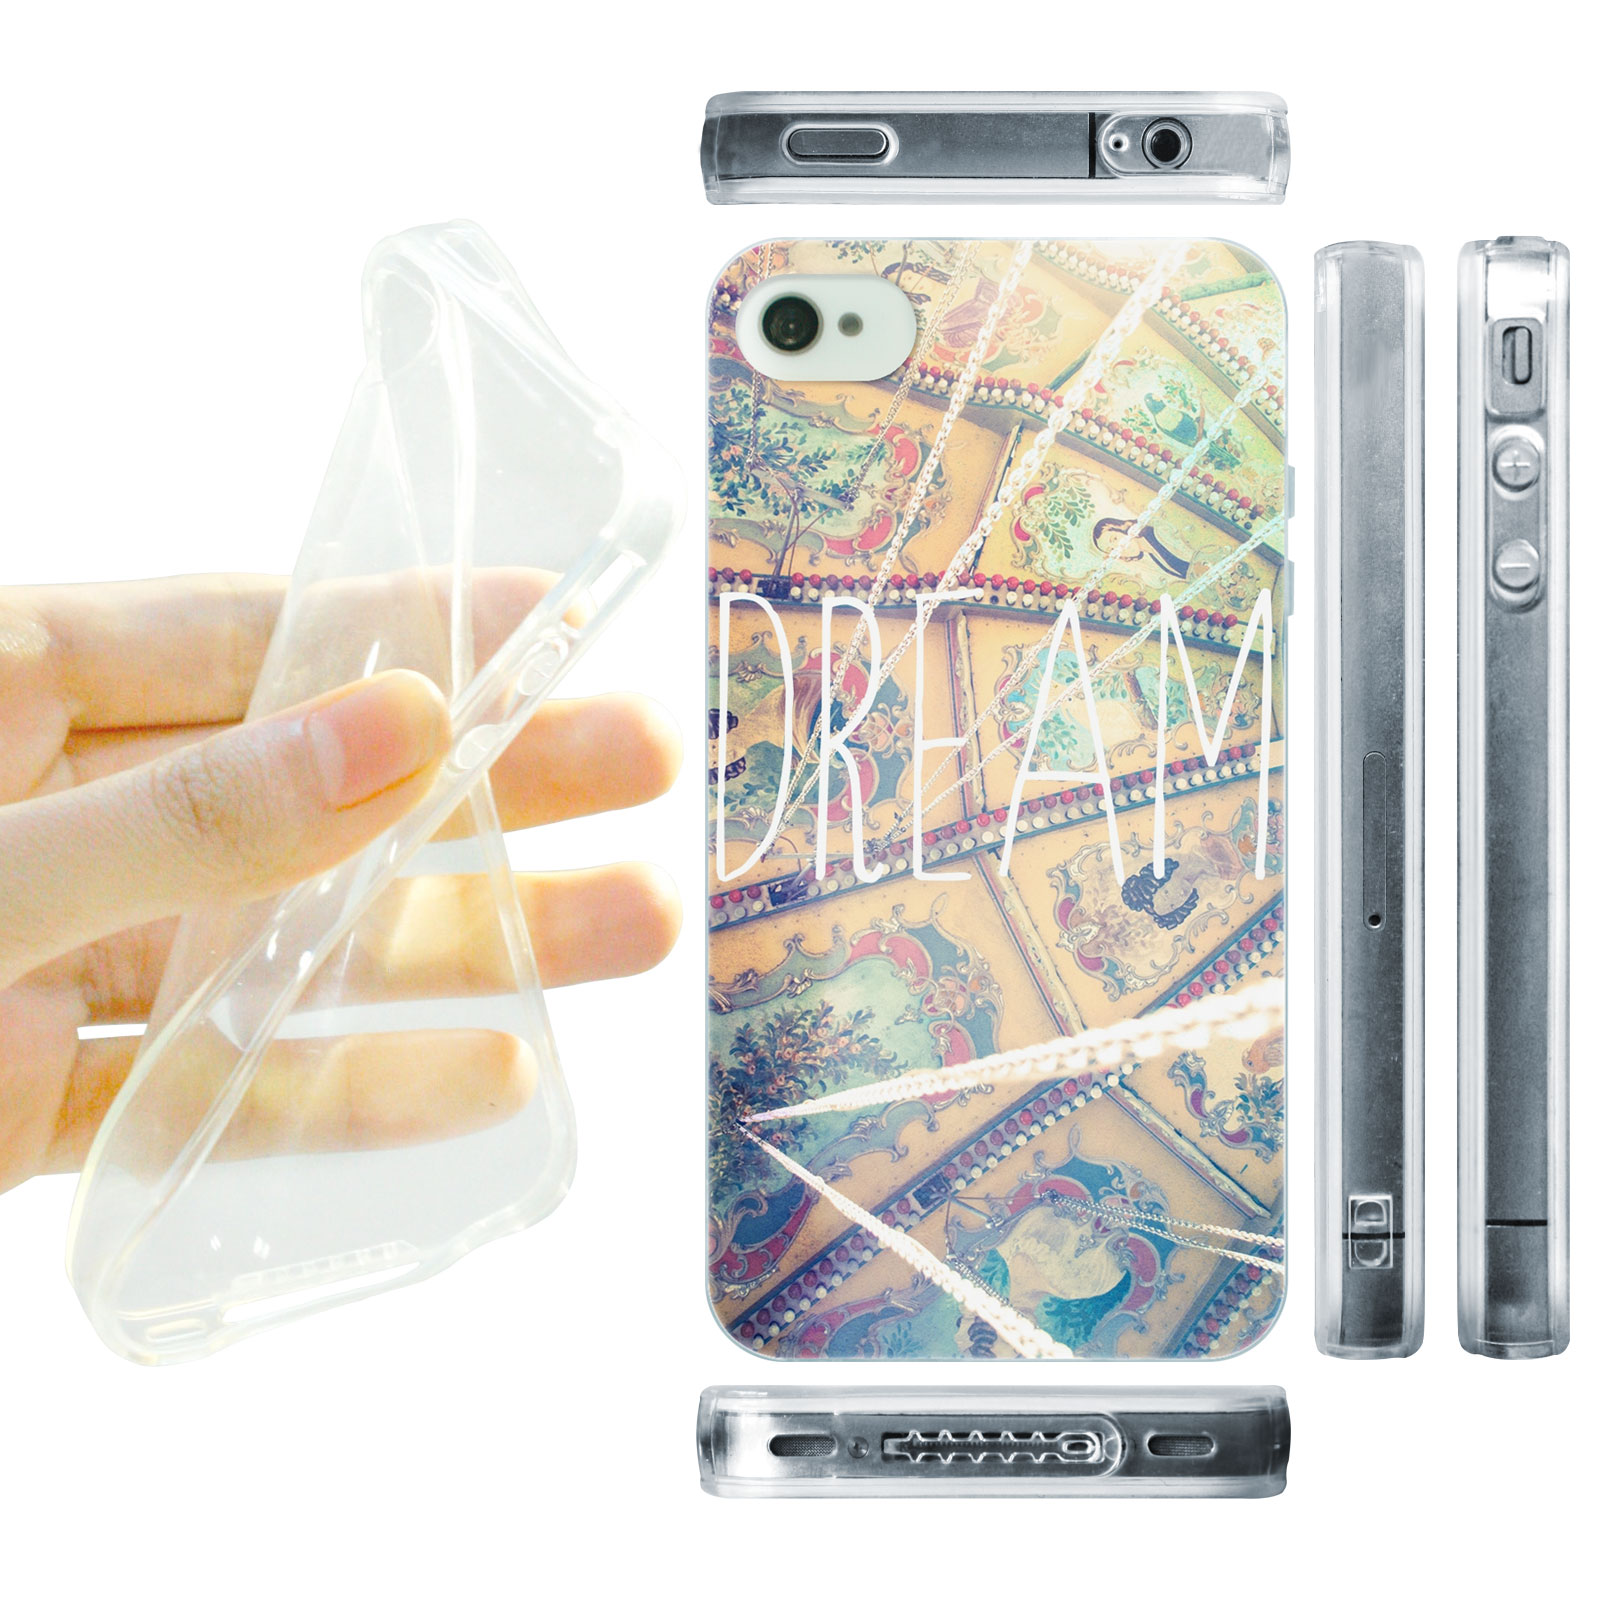 HEAD CASE silikonový obal na mobil Iphone 4/4S snění dream pozitivní myšlenky